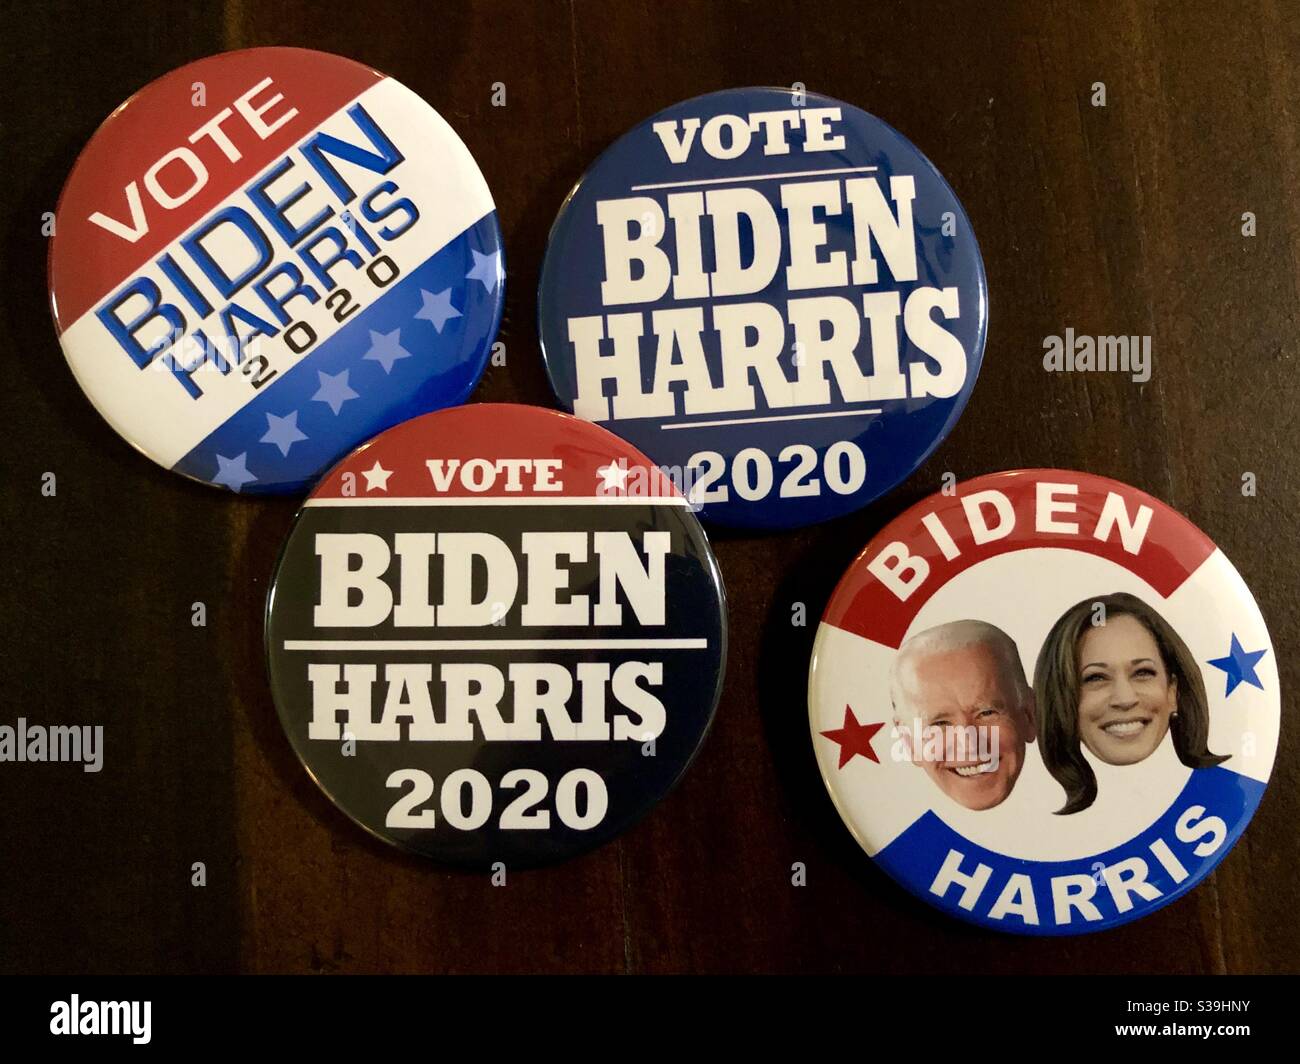 Vote Blue Dump Trump Democrats 3 Pins Vote for Biden Biden Harris Pins Joe Badges